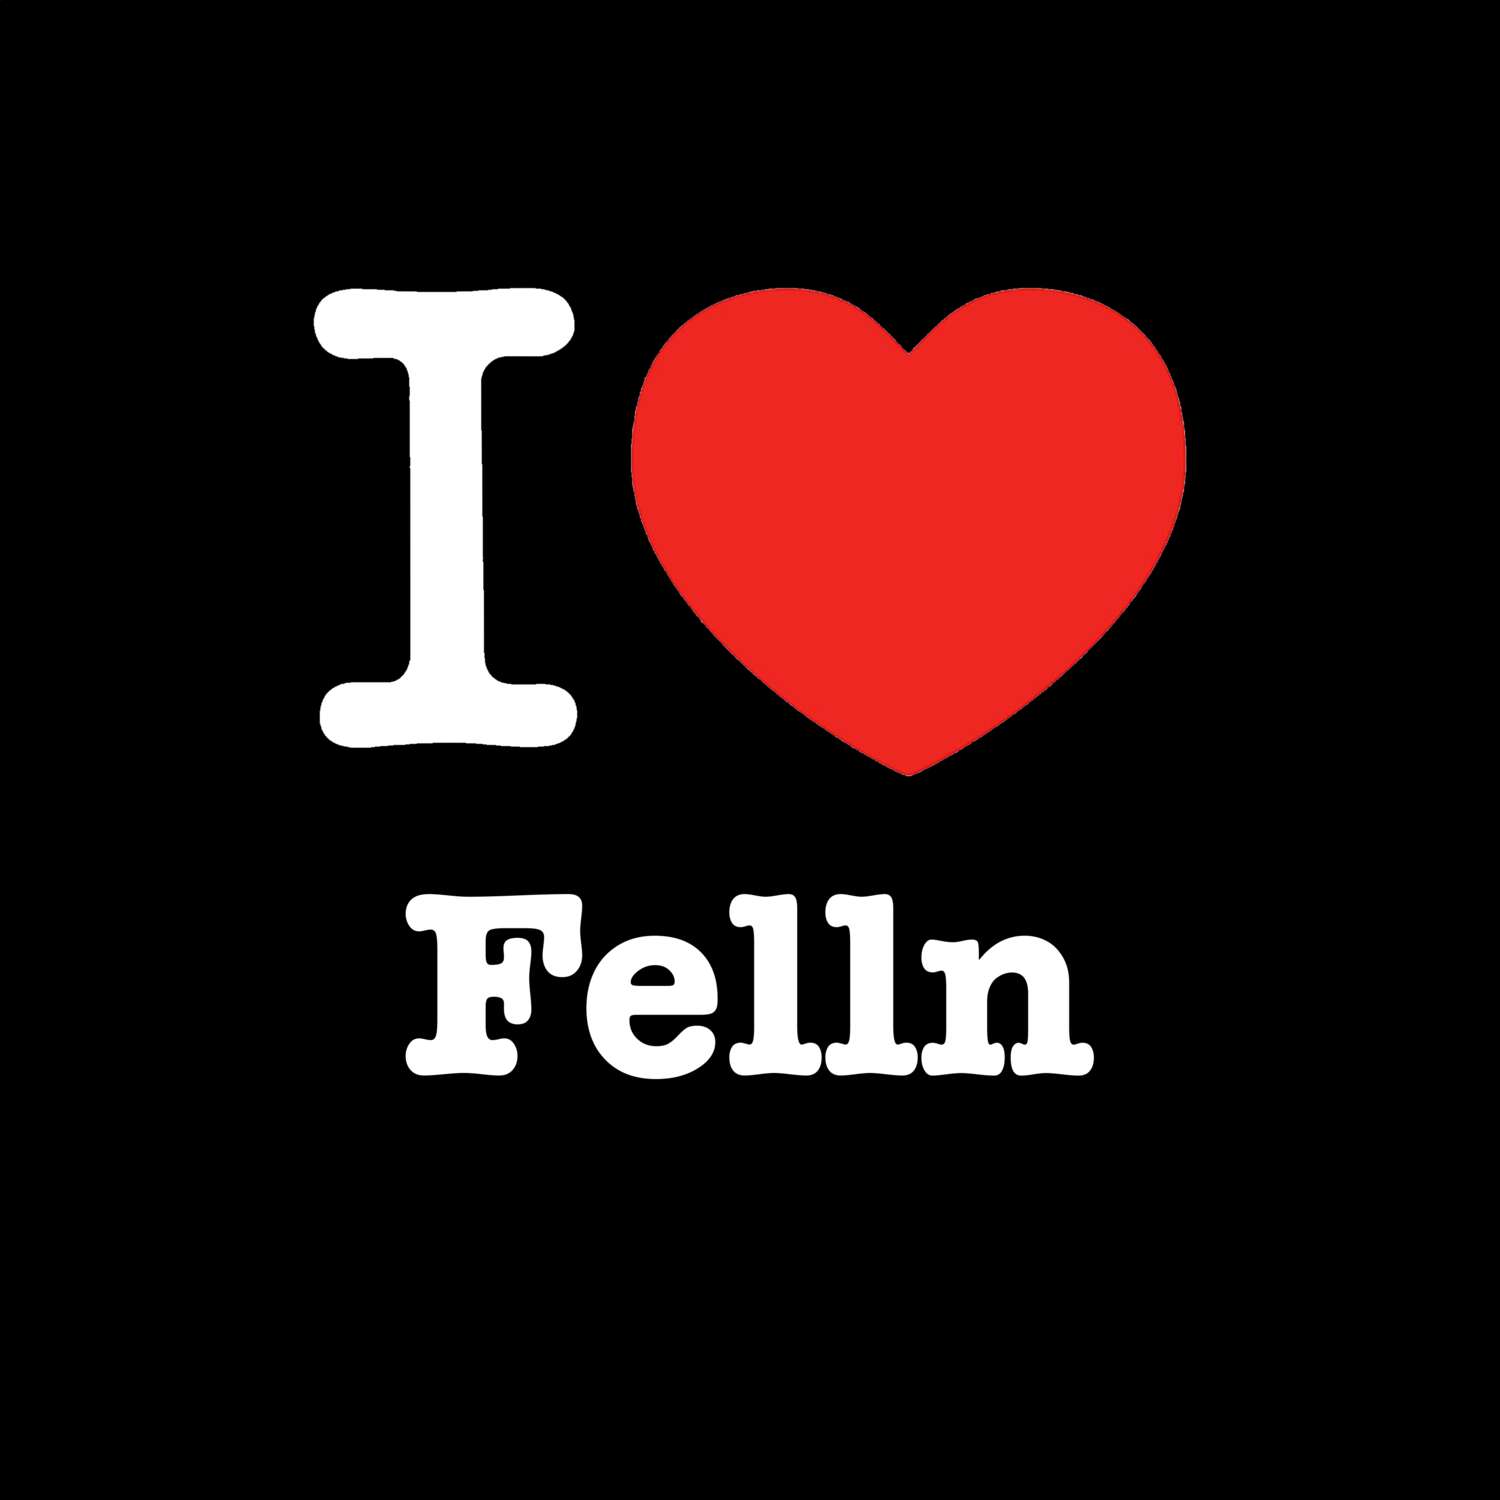 Felln T-Shirt »I love«